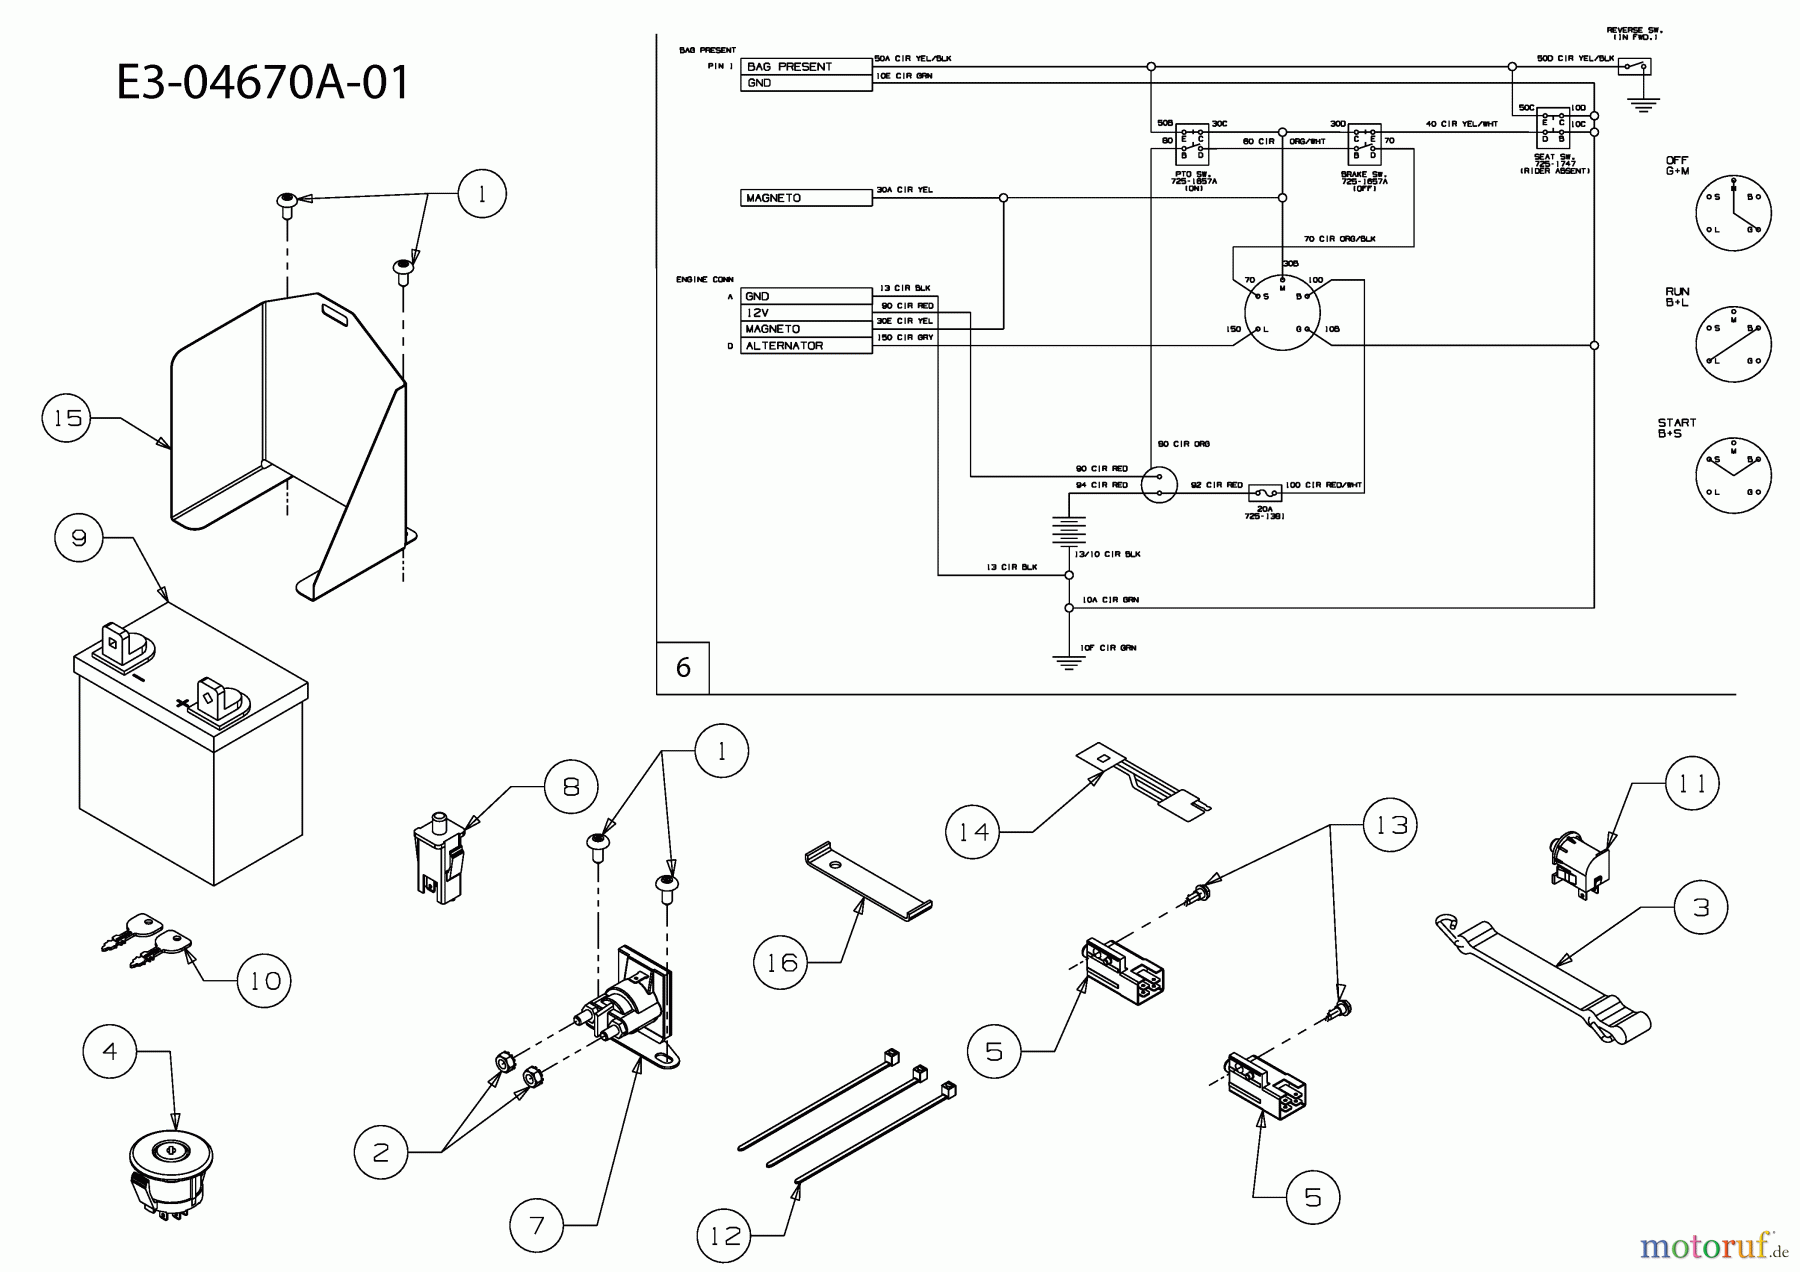  Lawnflite Rasentraktoren Minirider ES 13B4054-611  (2009) Elektroteile, Schaltplan